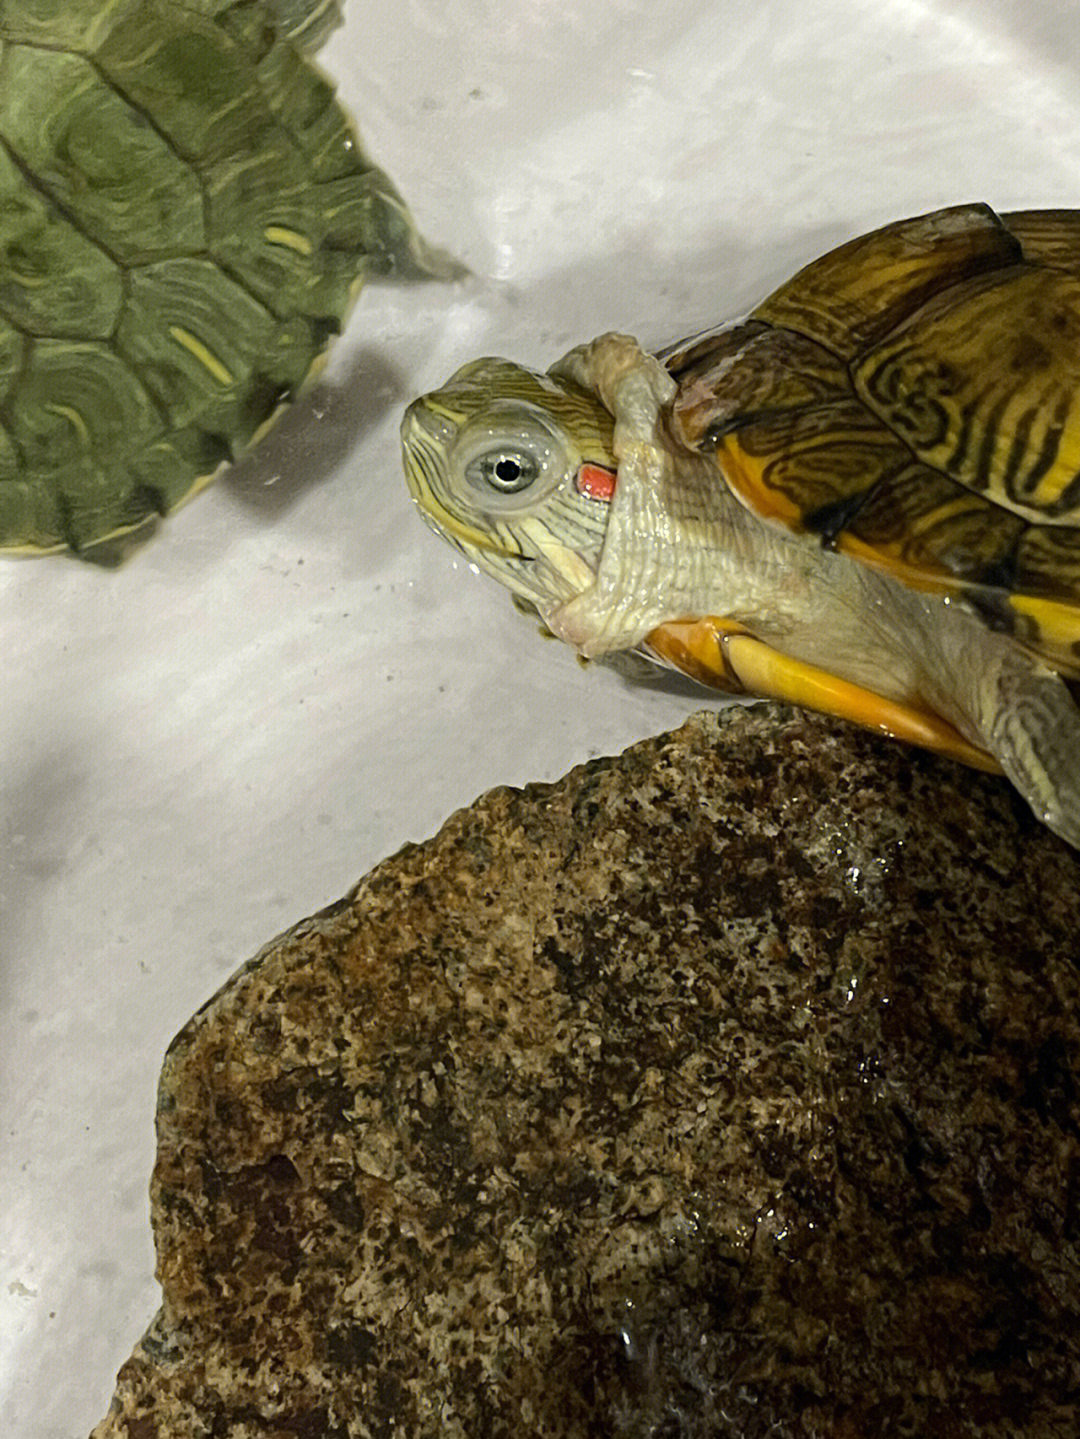 巴西龟宠物龟  昨天回家发现小孩买了两只乌龟回来,说是巴西龟,做了